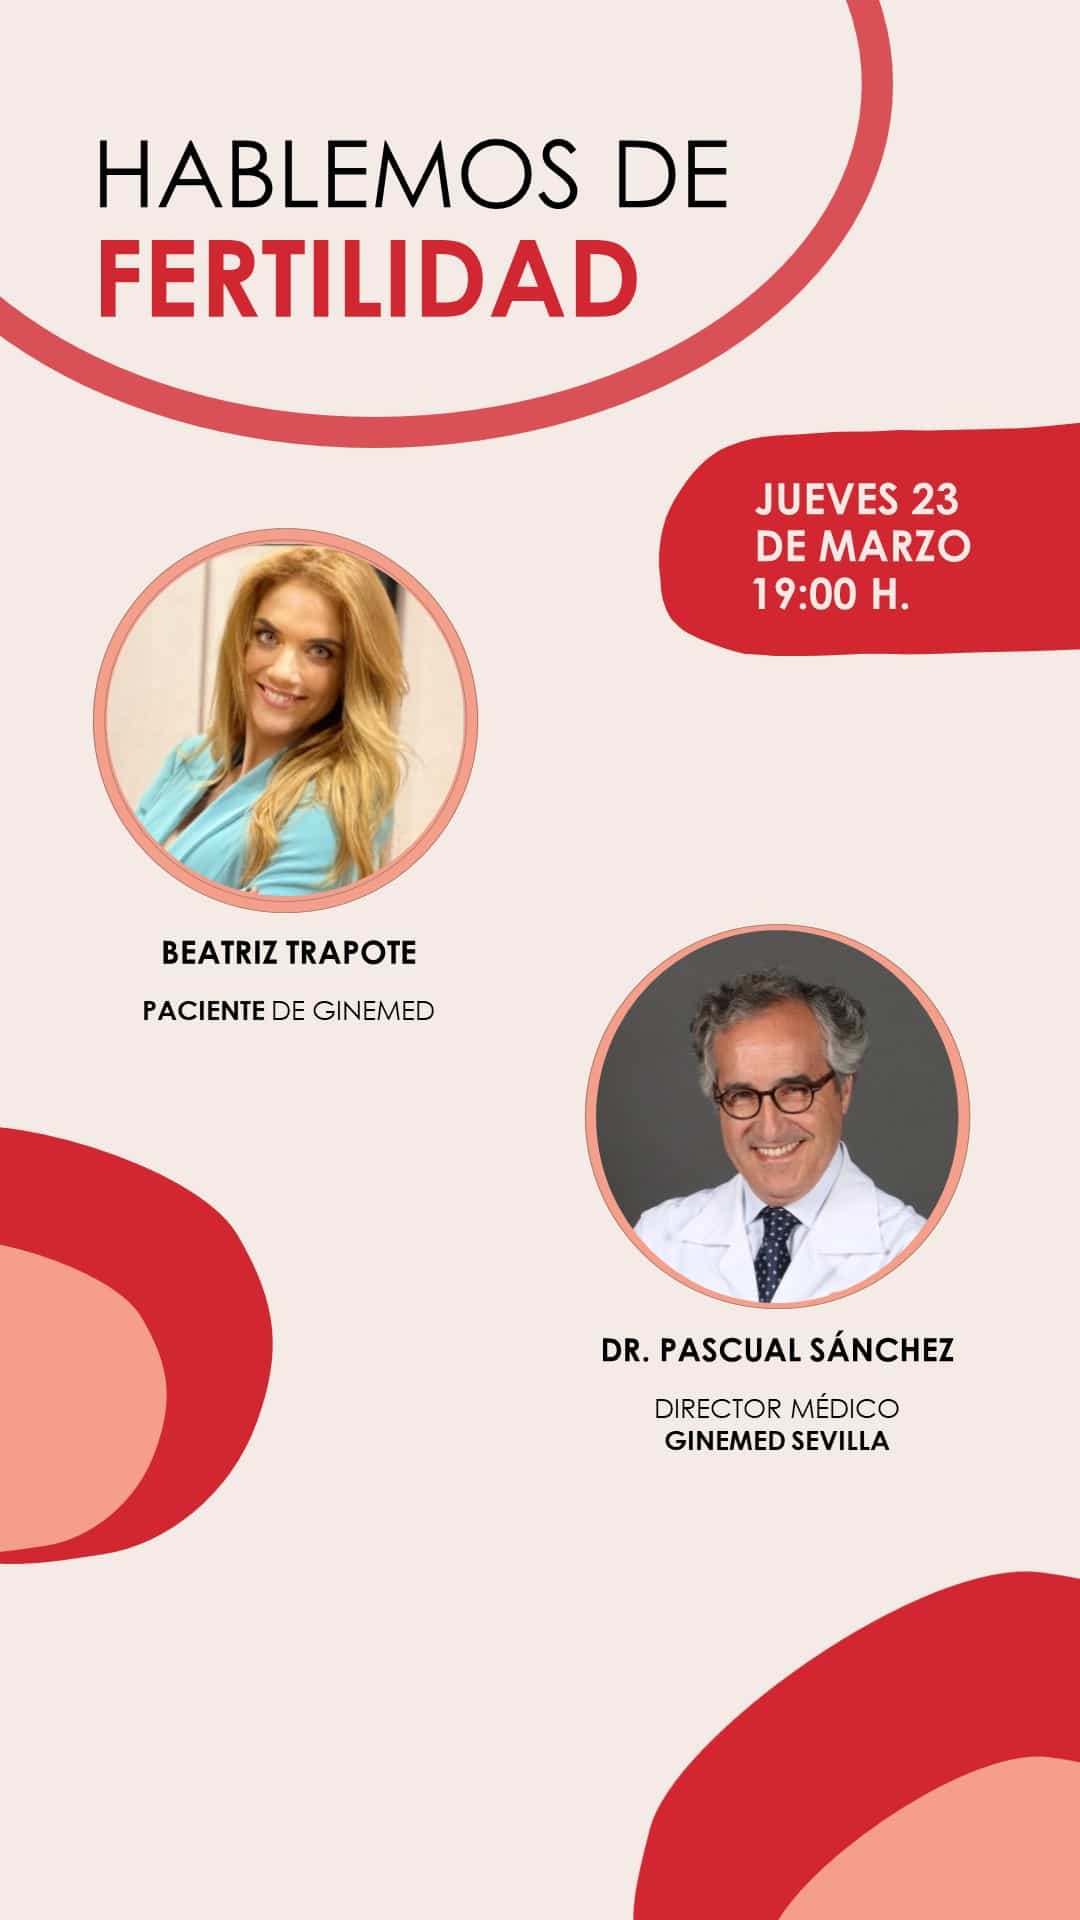 Instagram Live desde Ginemed Sevilla con el Dr. Pascual Sánchez y Beatriz Trapote